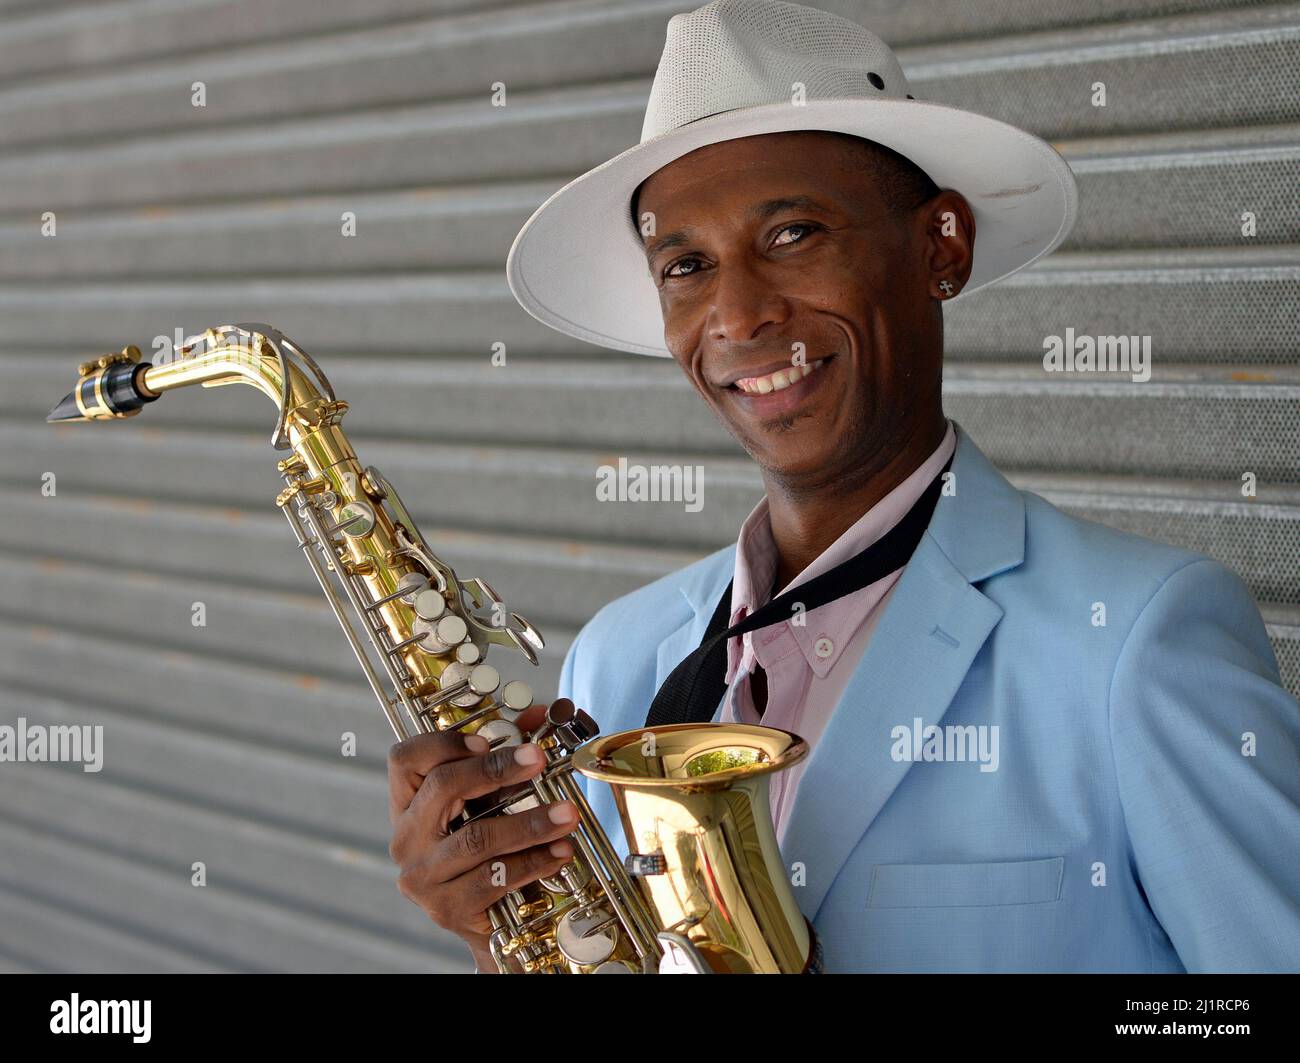 Bel giovane ed elegante sassofonista afro-cubano con cappello Panama bianco tiene il suo sassofono lucido lucido e sorride per lo spettatore. Foto Stock